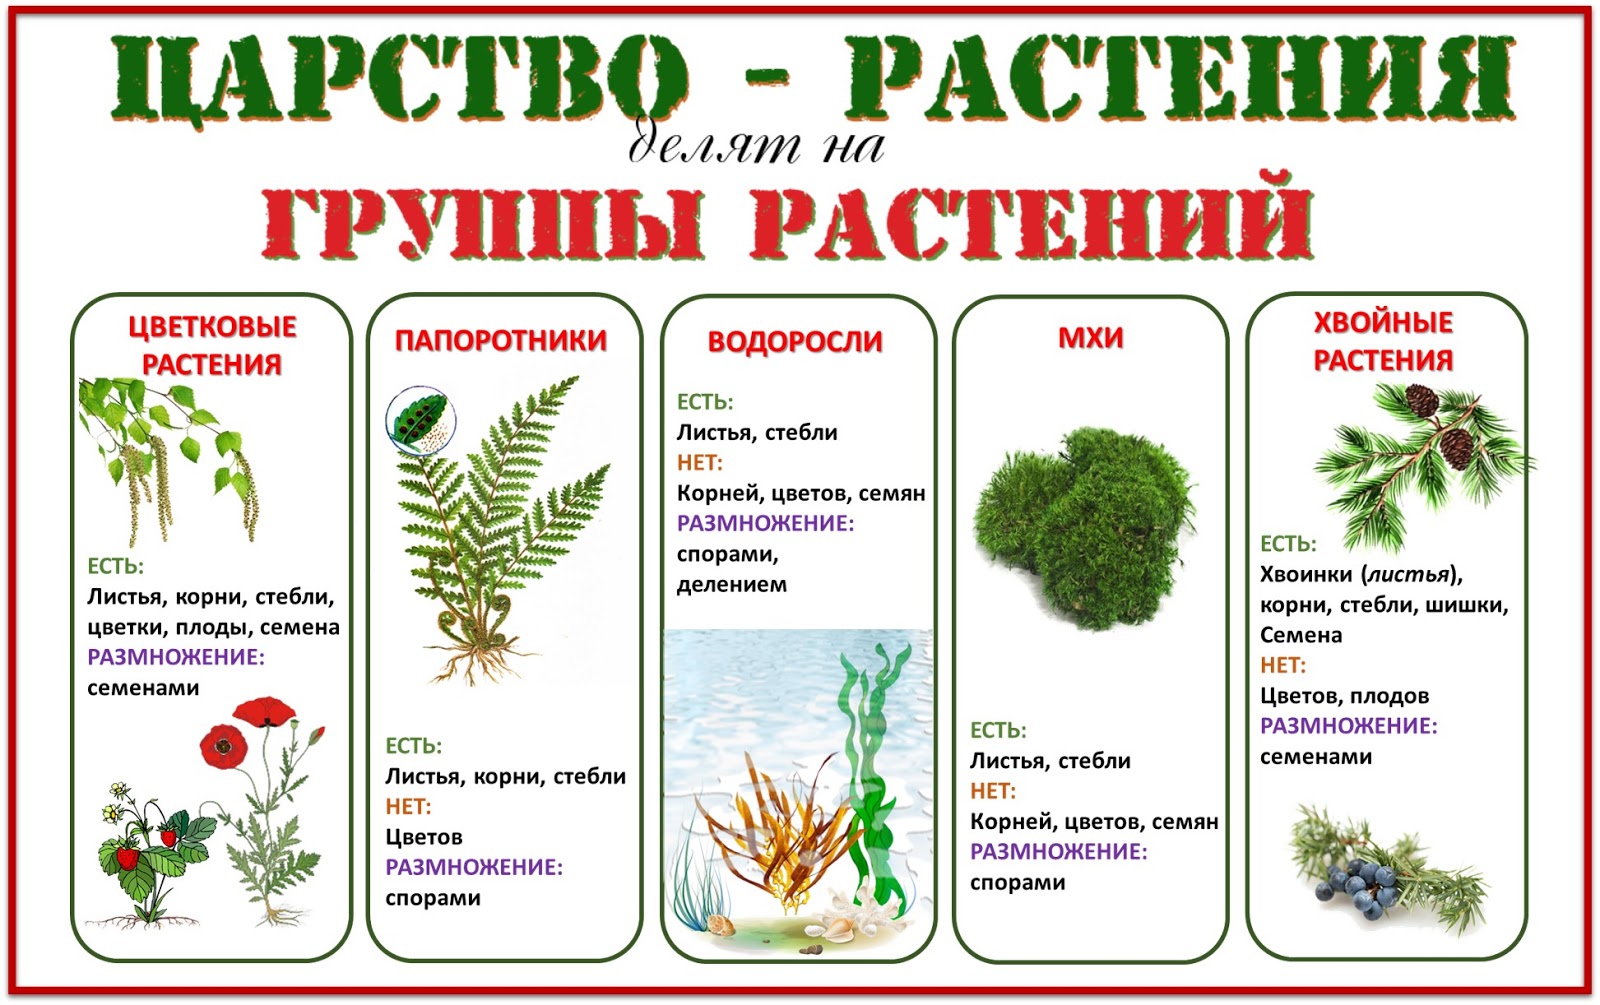 Сколько классов растений. Группы растений. Деление растений на группы. Группы царства растений. Царство растений делится на группы.